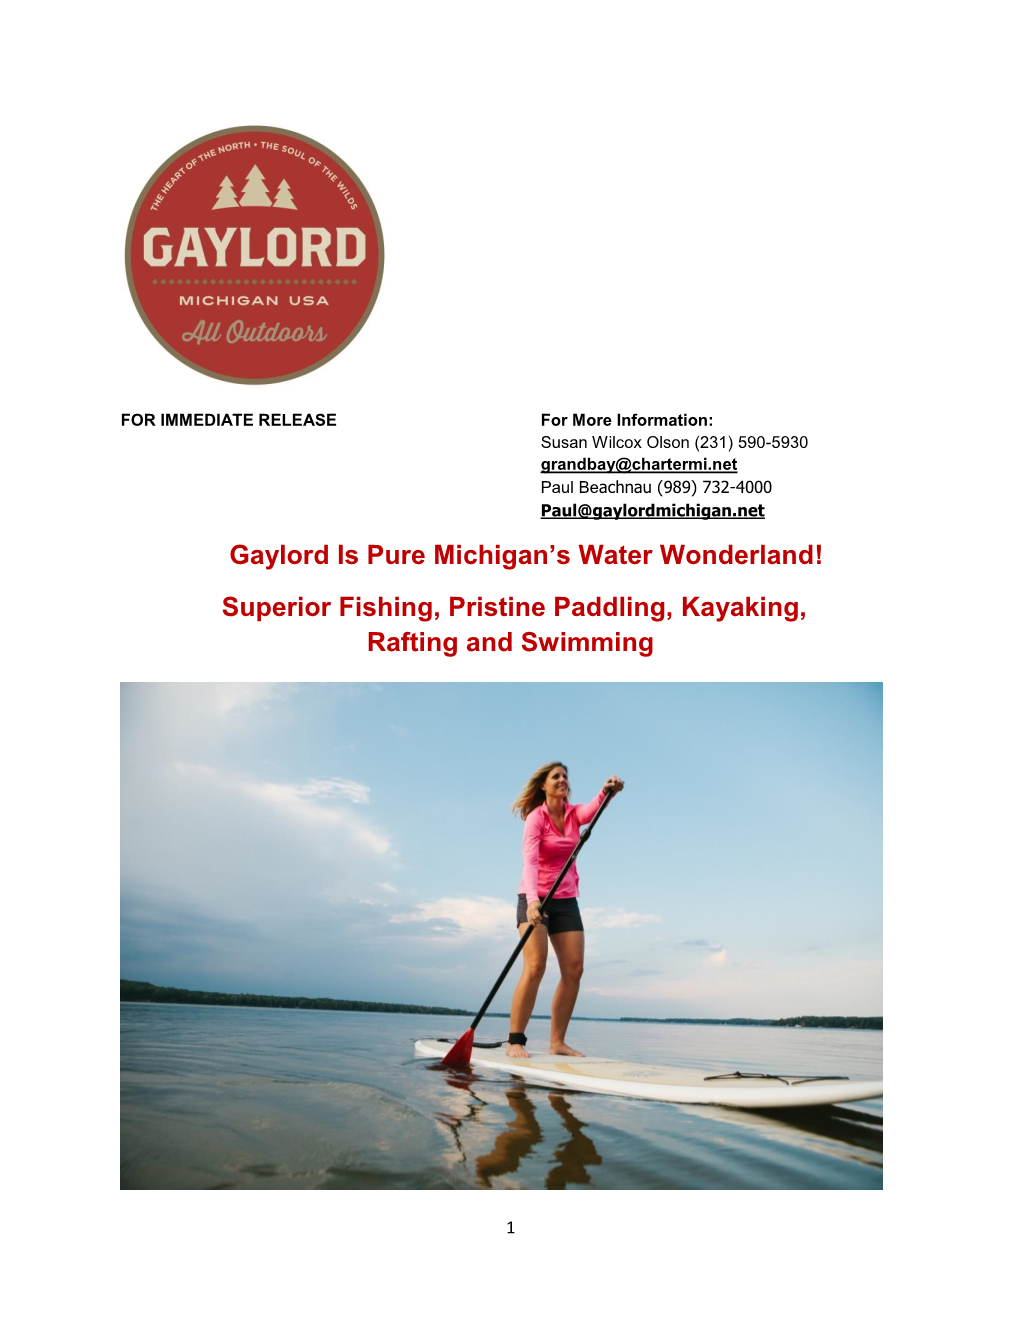 Superior Fishing, Pristine Paddling, Kayaking, Rafting and Swimming